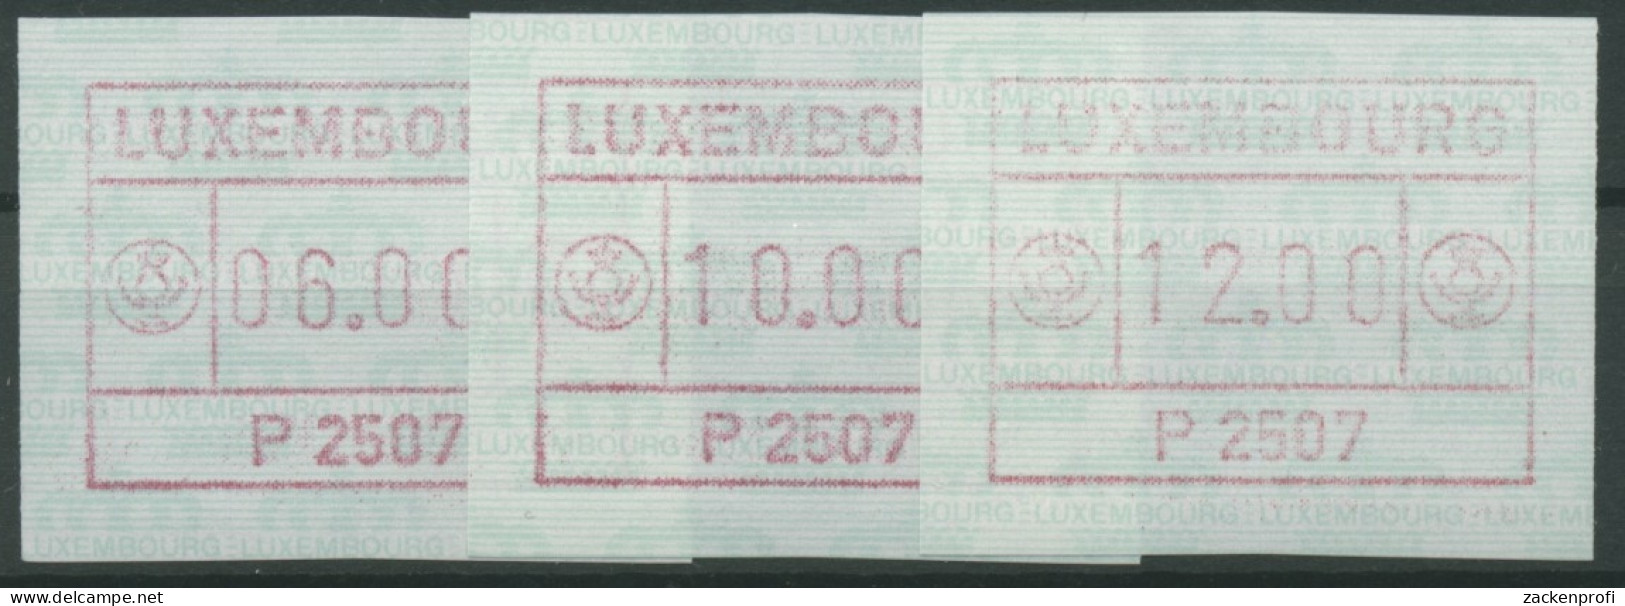 Luxemburg 1983 Automatenmarke 1 Satz 3 Werte Automat P2507 Postfrisch - Automatenmarken